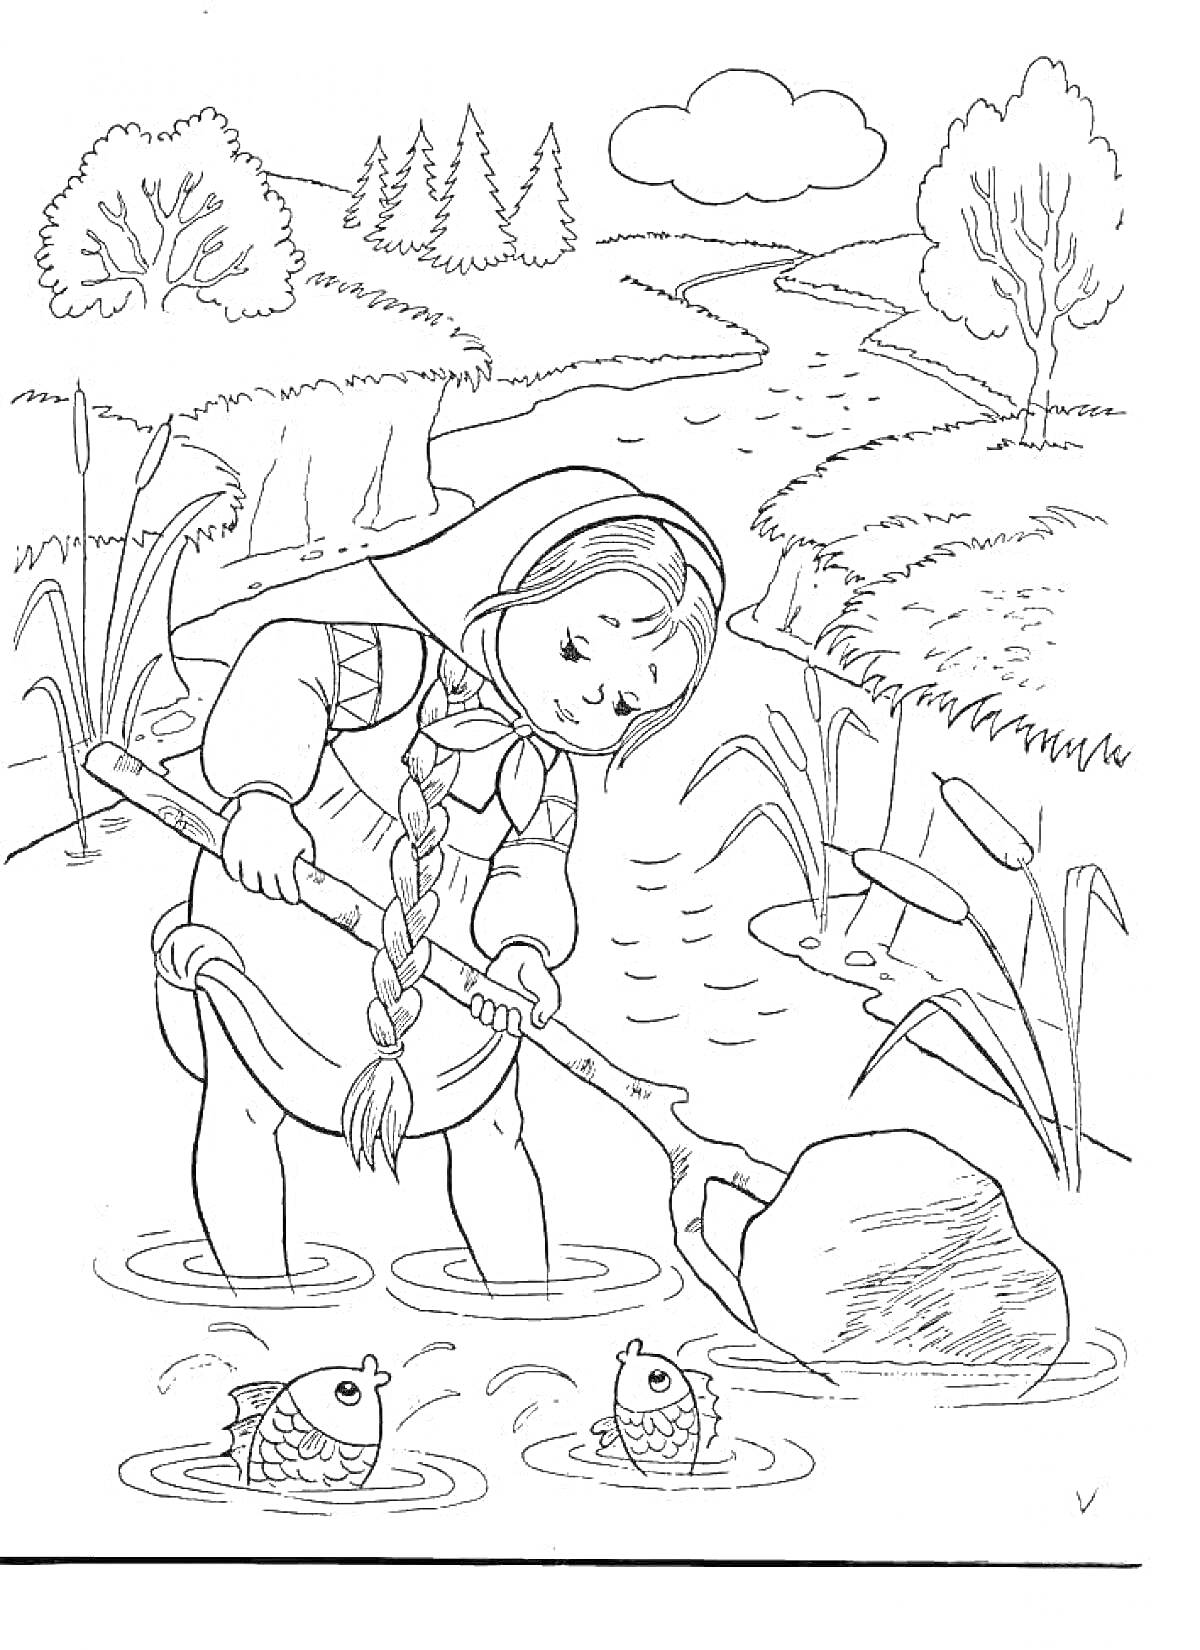 Раскраска Девочка с косой у реки с гусями, водой и рыбами